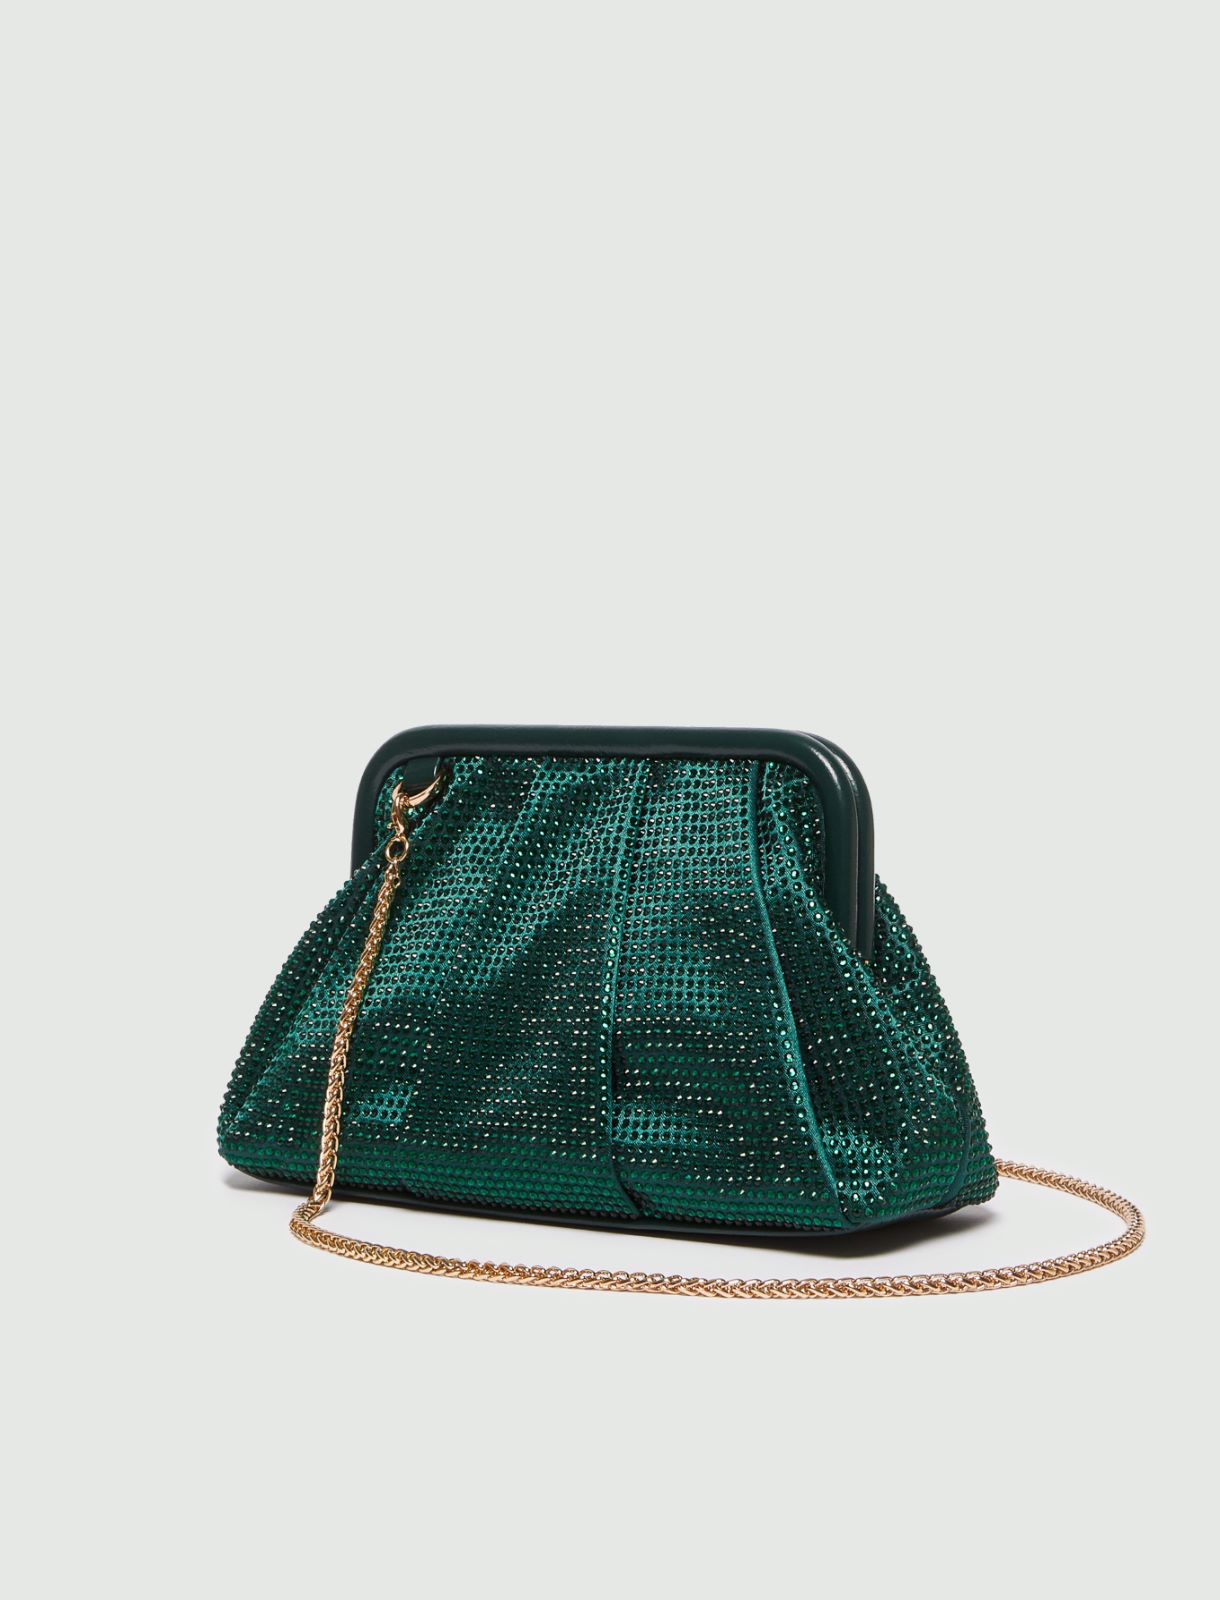 Bag in Bag - Apple Green mit Netz Grösse S - Handtaschen Organizer - online  bei ISDA kaufen